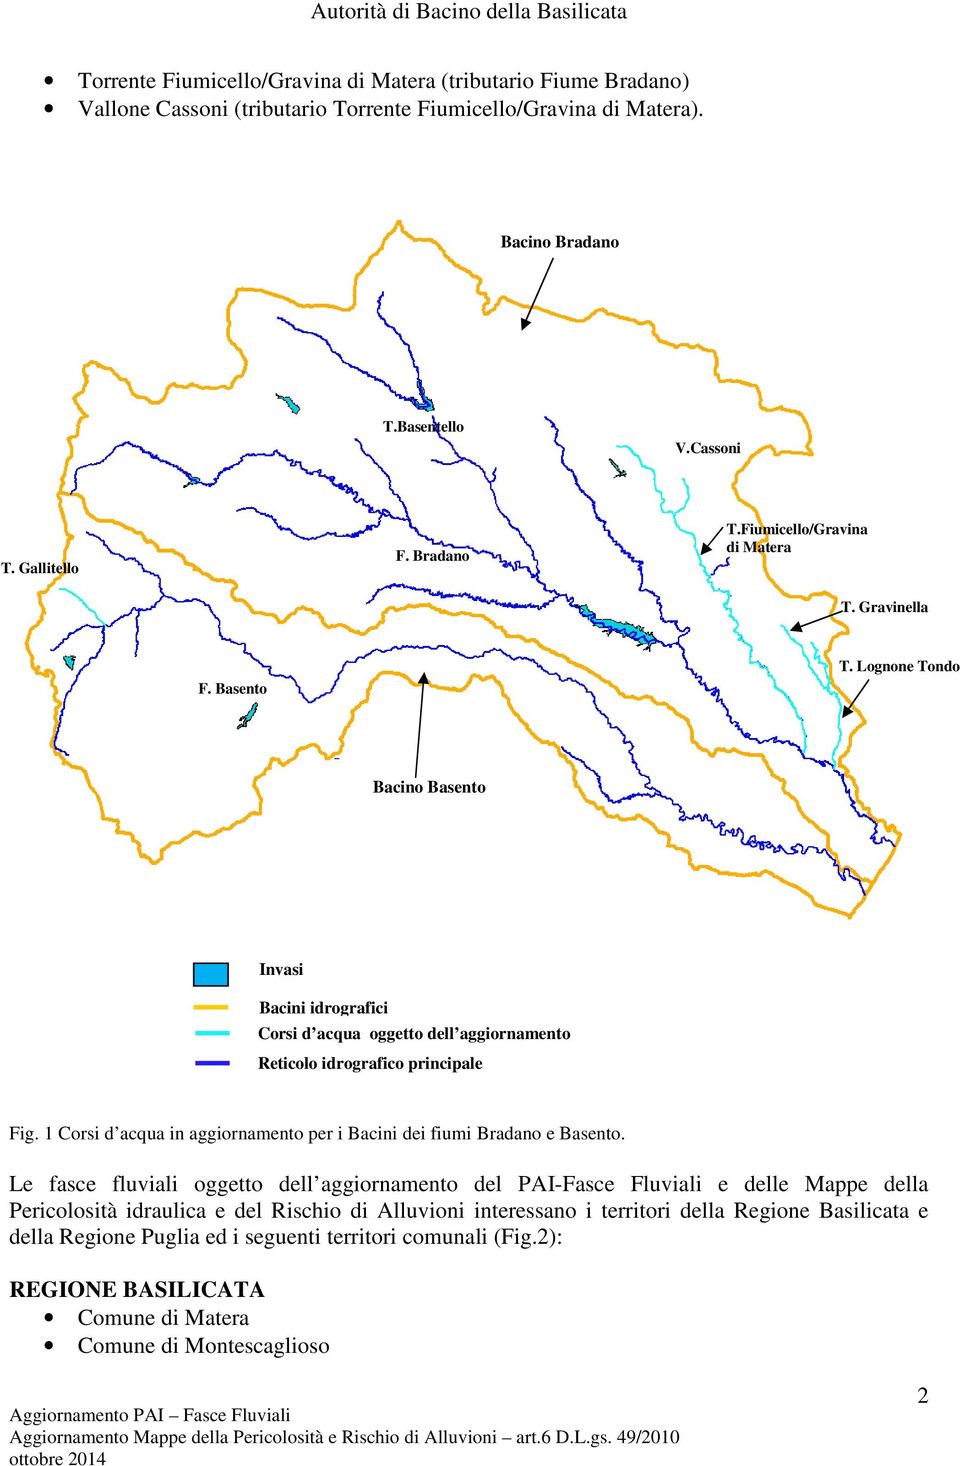 1 Corsi d acqua in aggiornamento per i Bacini dei fiumi Bradano e Basento.